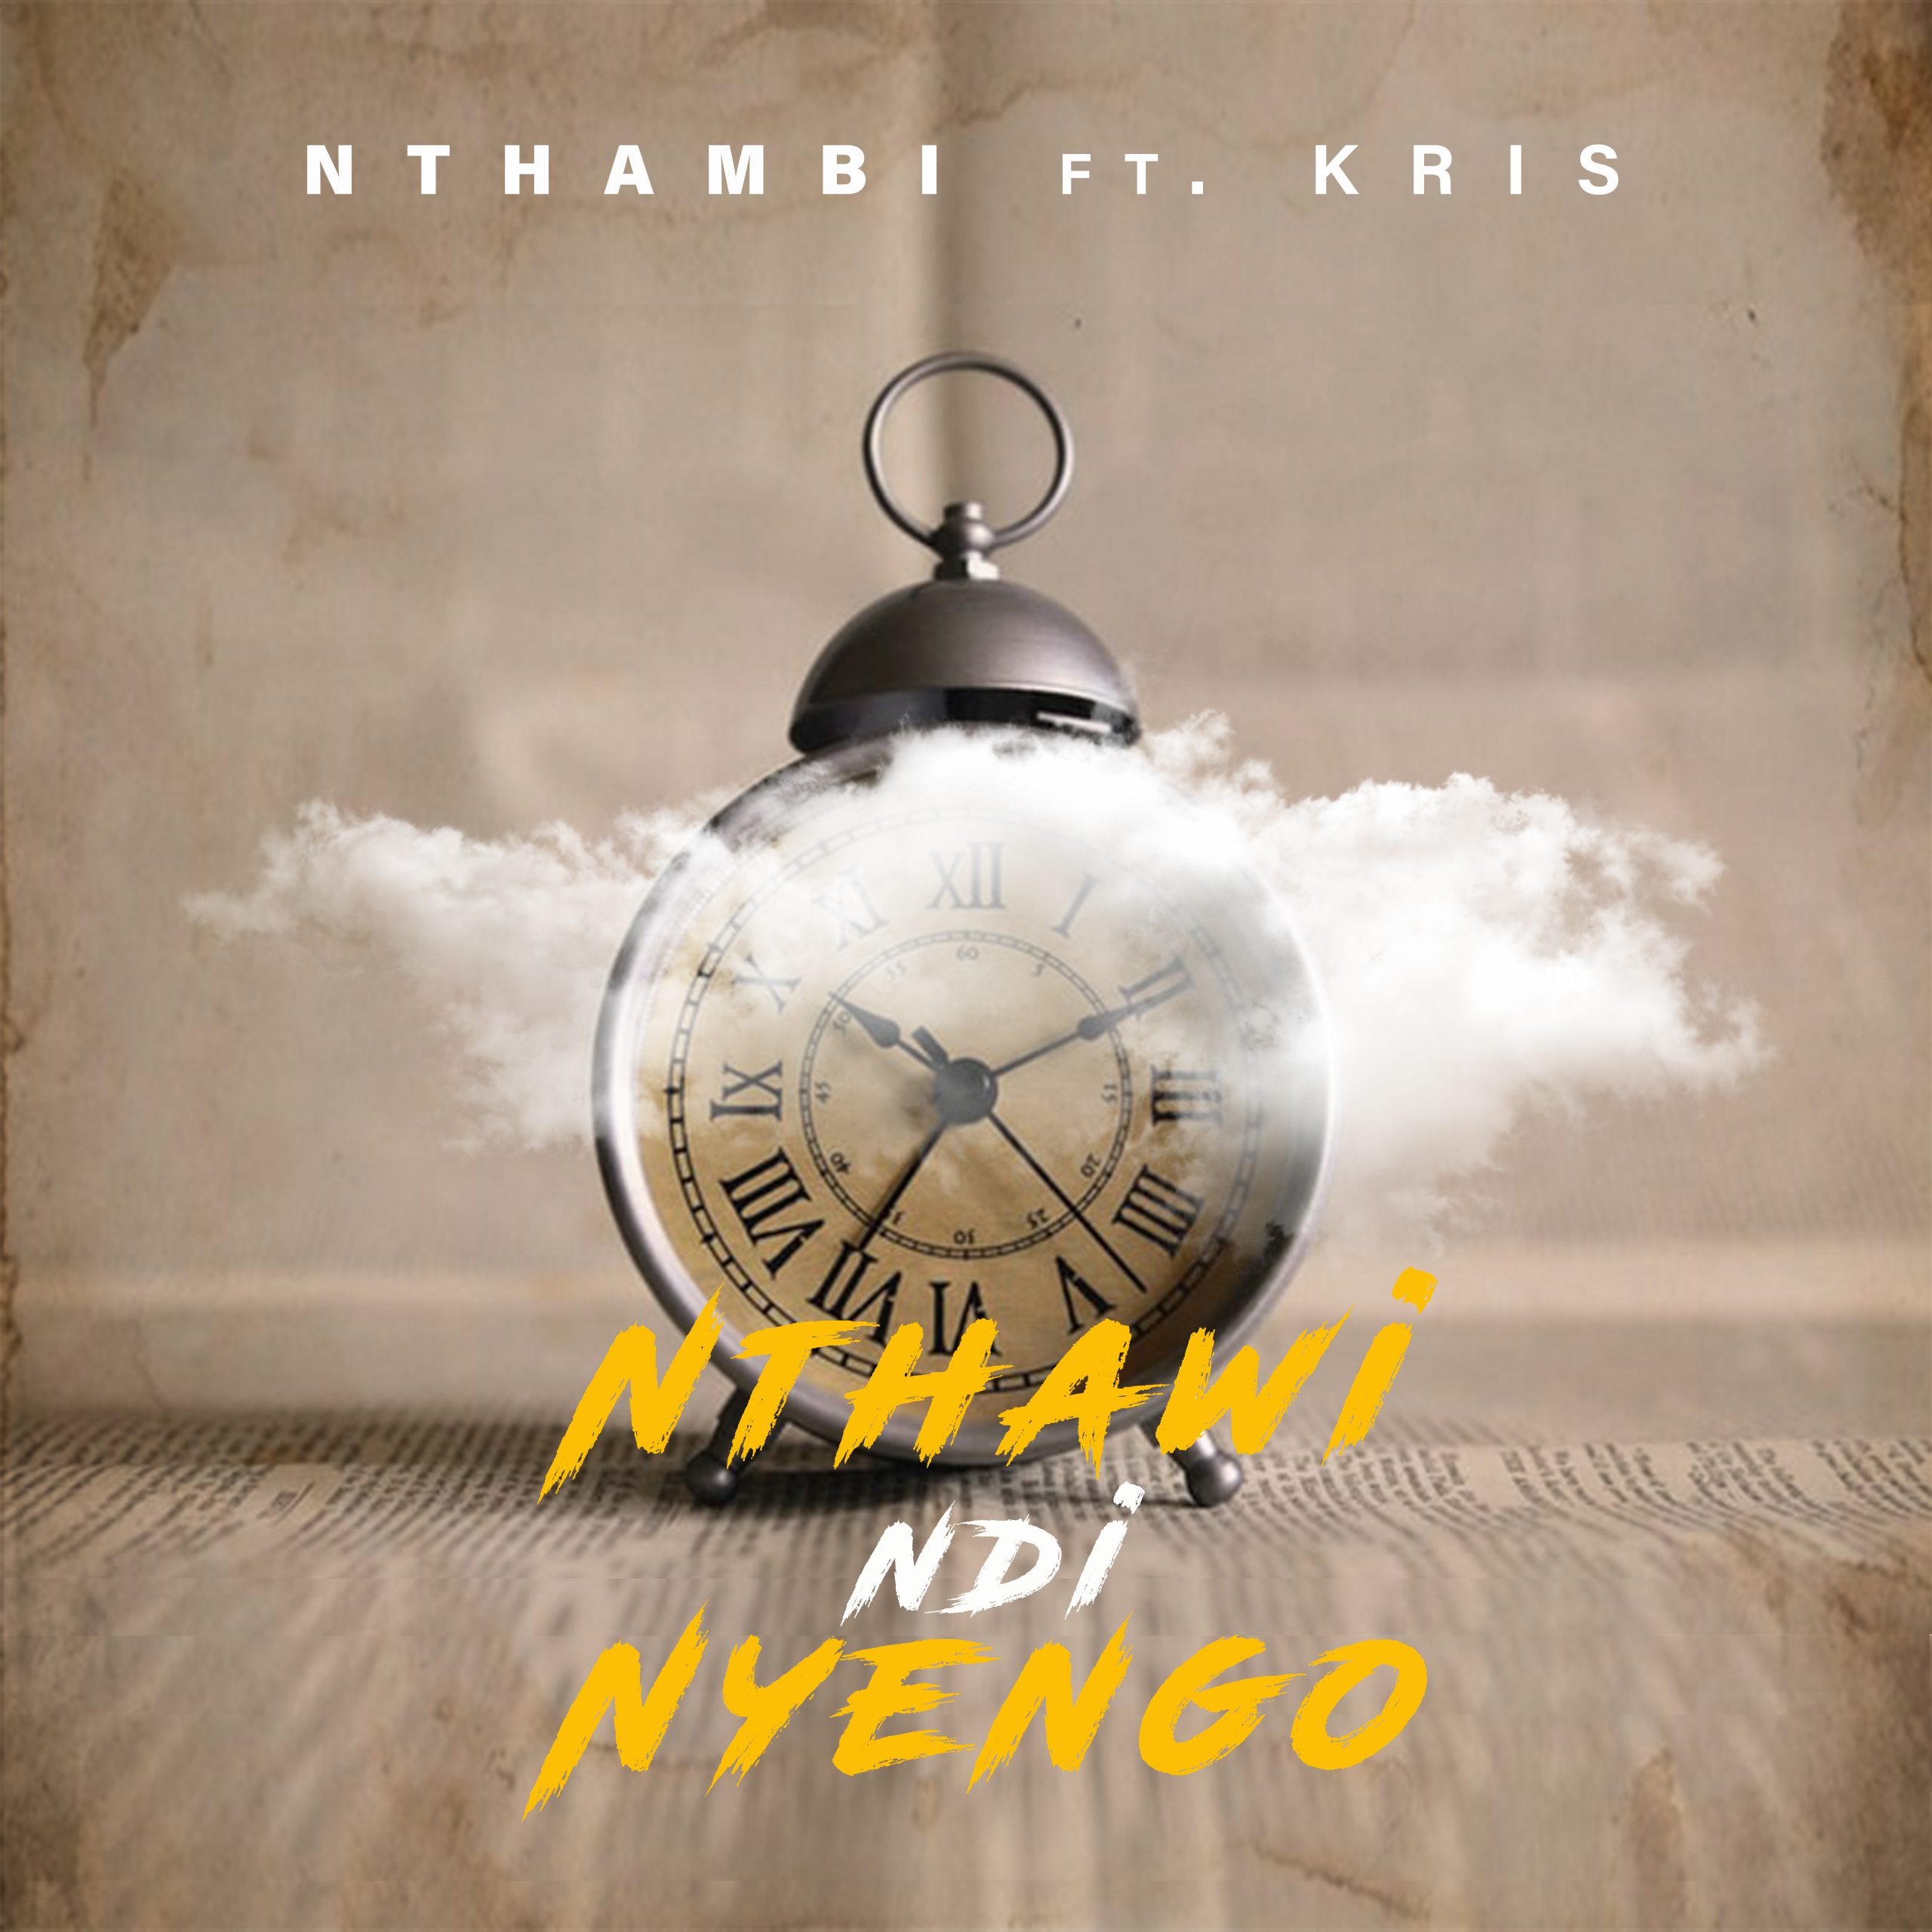 Nthambi – Nthawi Ndi Nyengo ft Kris